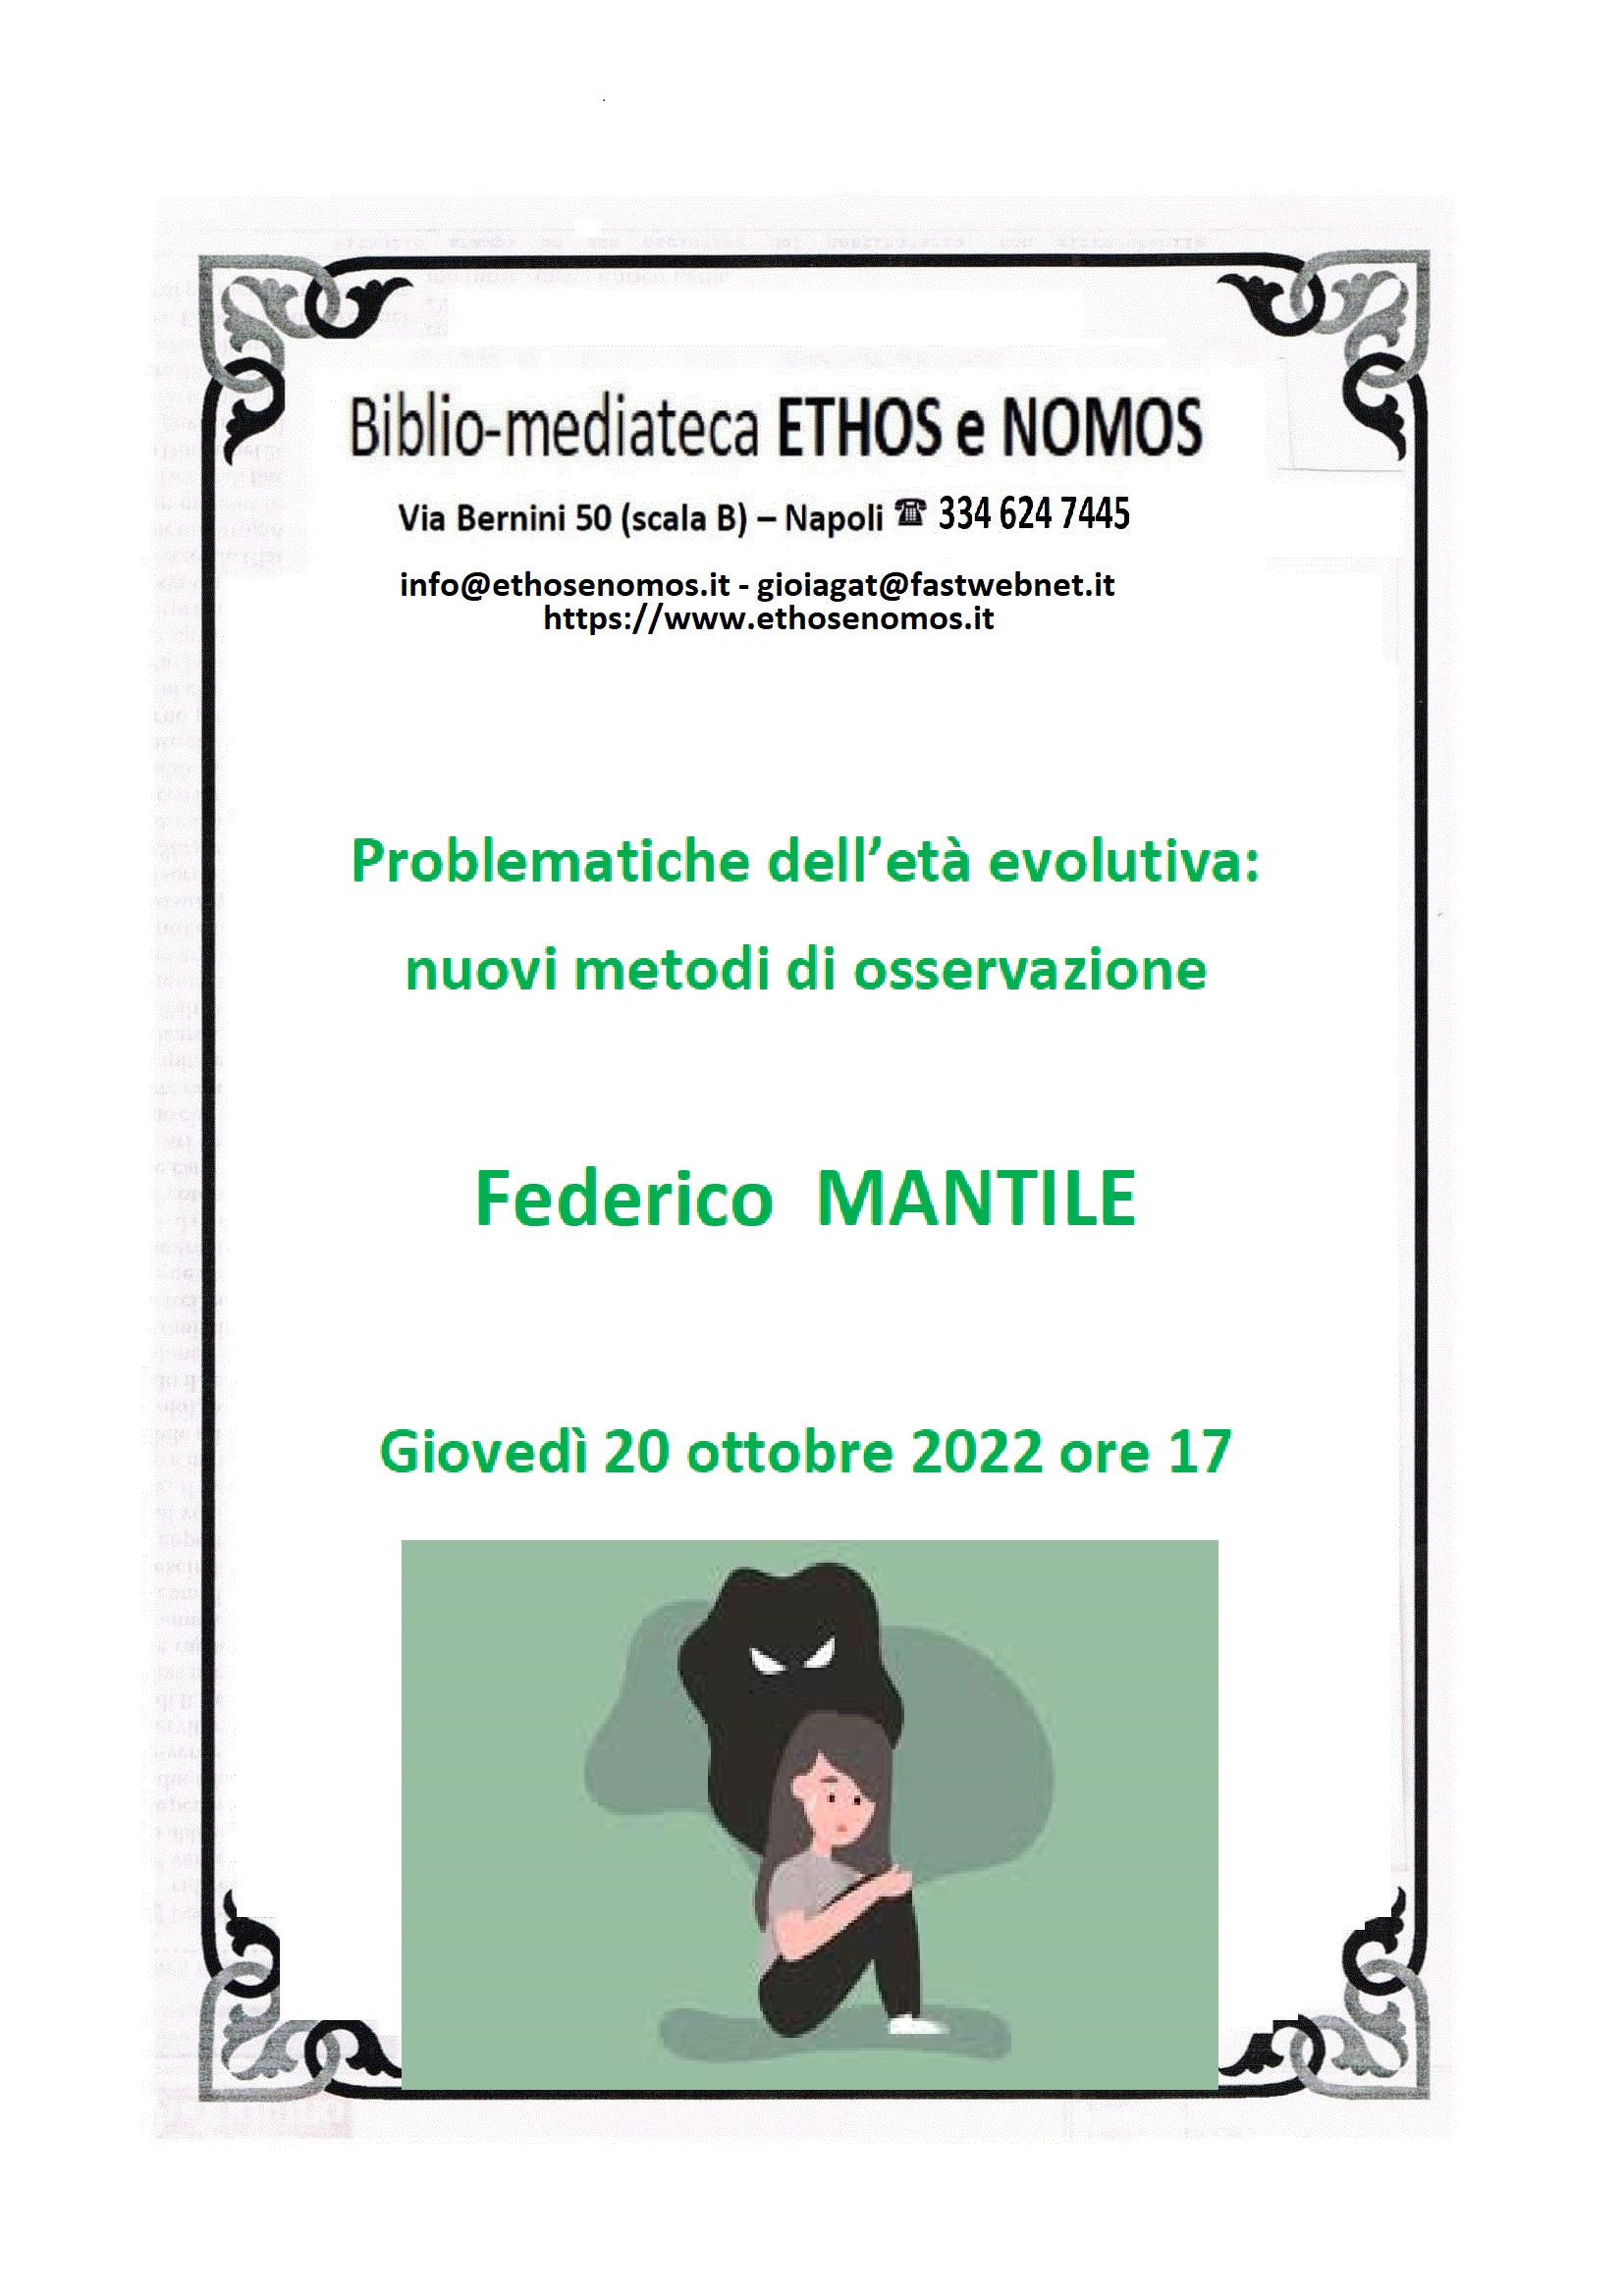 Federico MANTILE - Problematiche dell’età evolutiva: nuovi metodi di osservazione